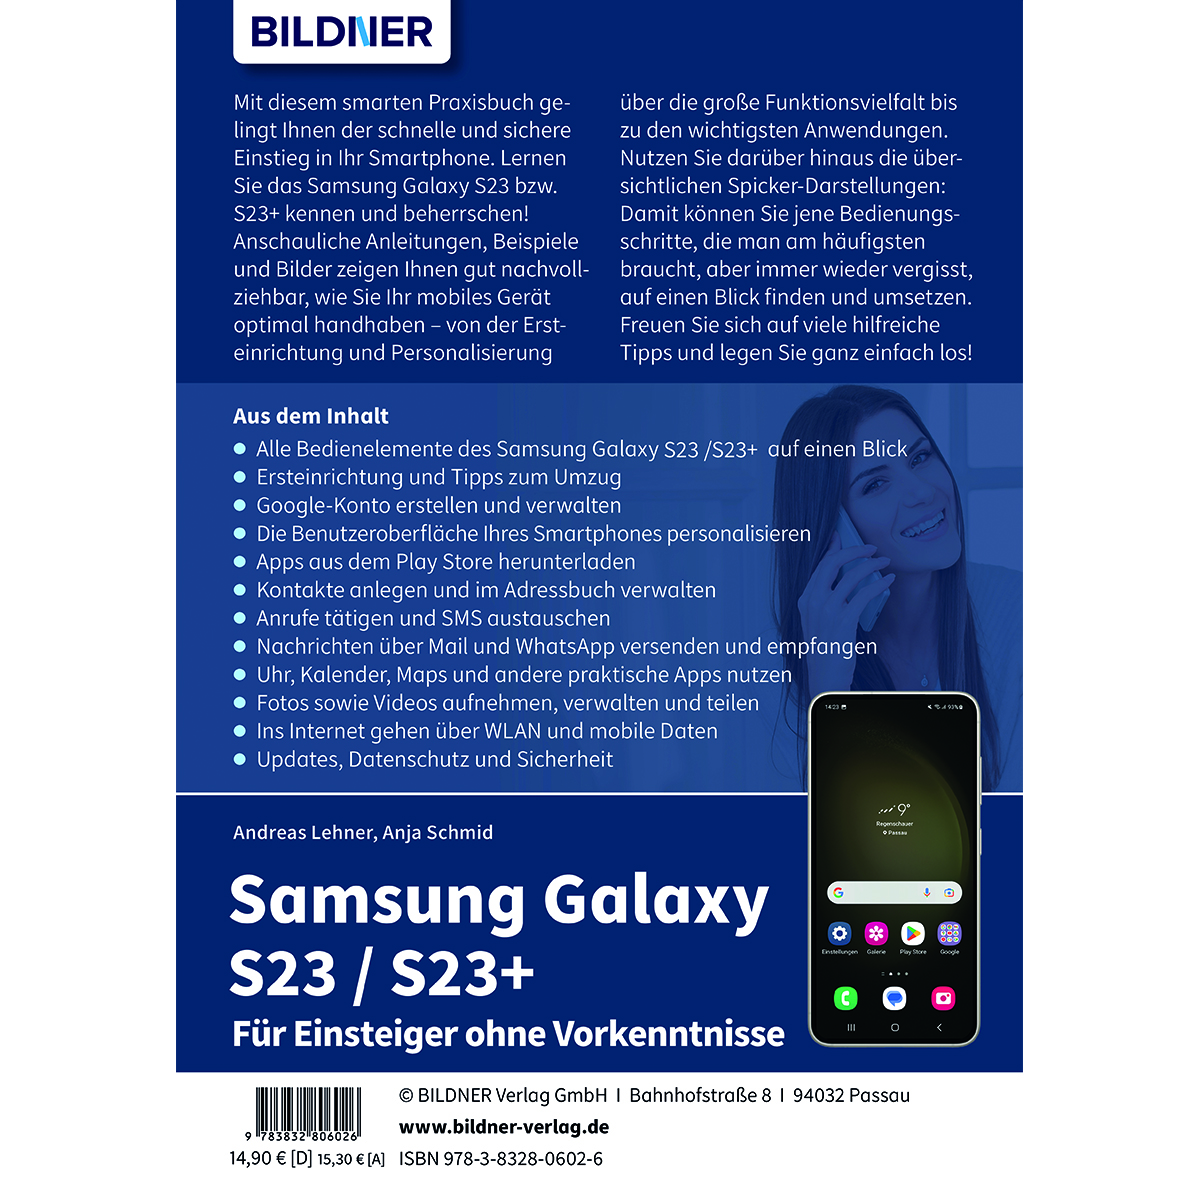 Einsteiger Für – Galaxy Samsung ohne Vorkenntnisse S23/S23+